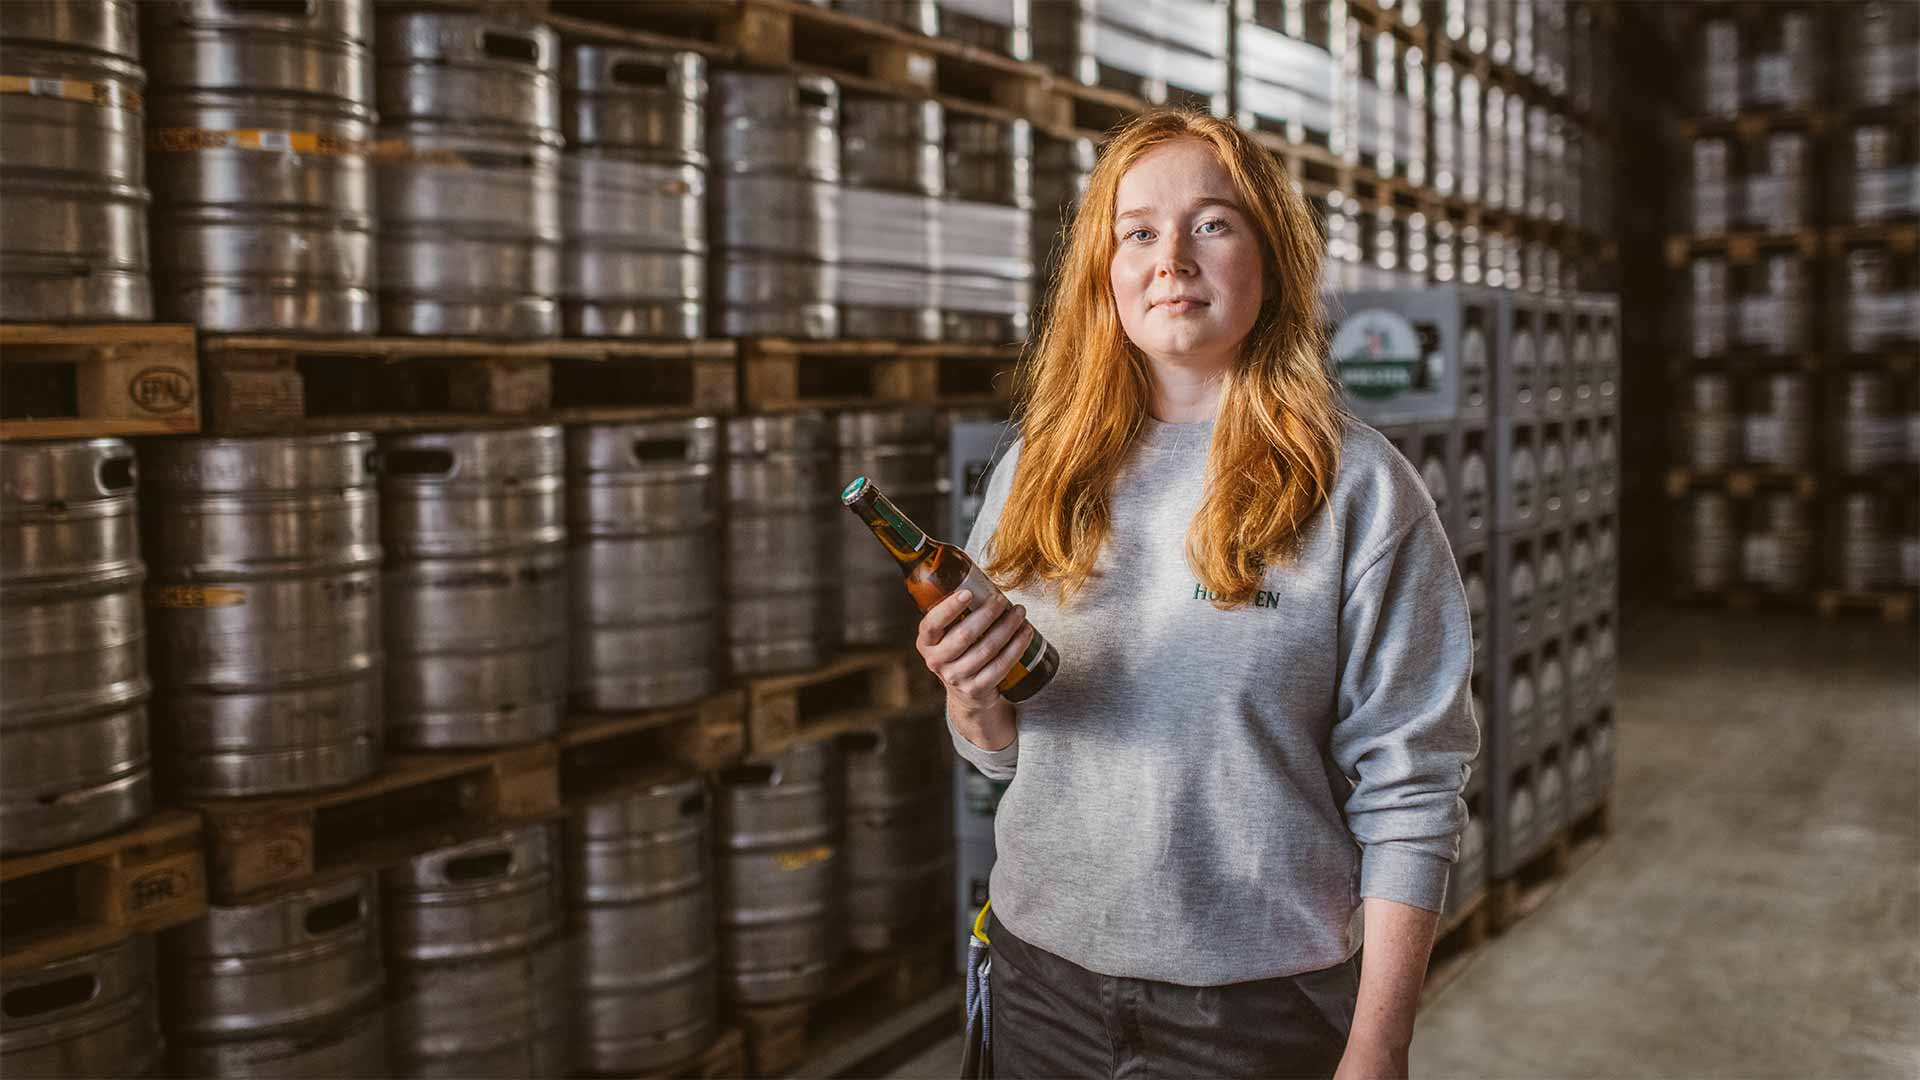 Holsten Prozessingenieurin Anna steht stolz vor Bierfässern im Lager